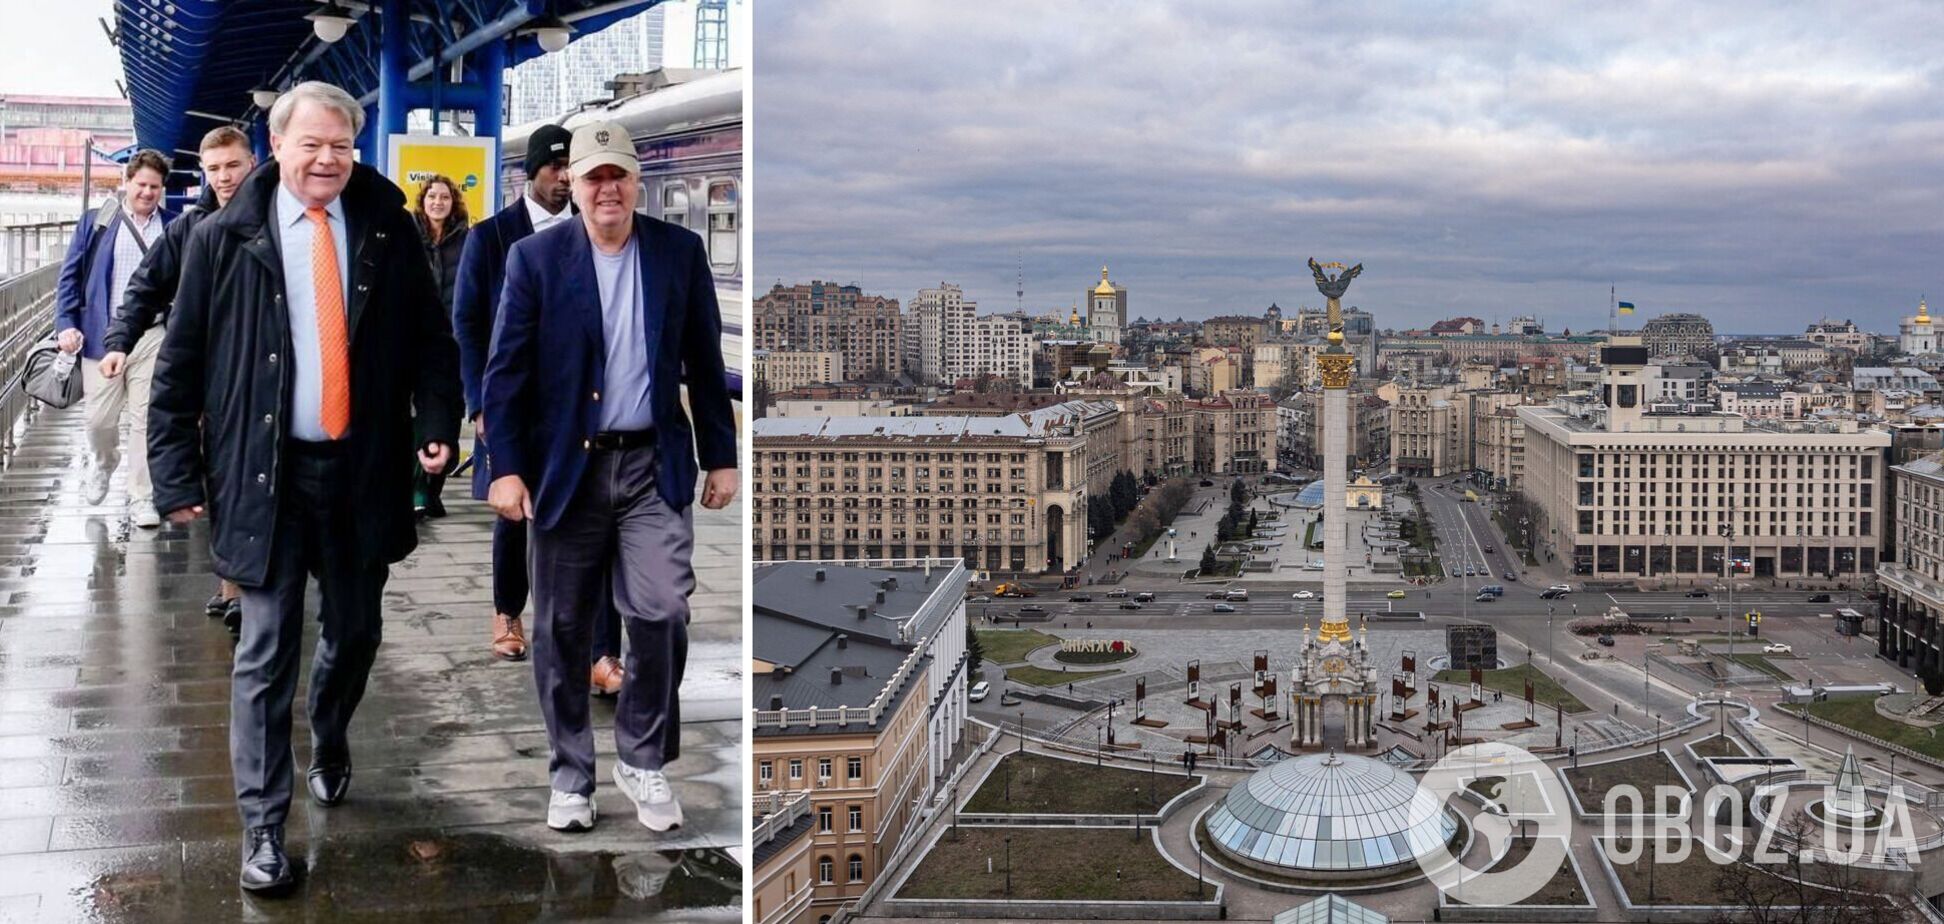 'Непреклонная поддержка США имеет решающее значение': в Киев прибыл сенатор-республиканец Линдси Грэм. Фото